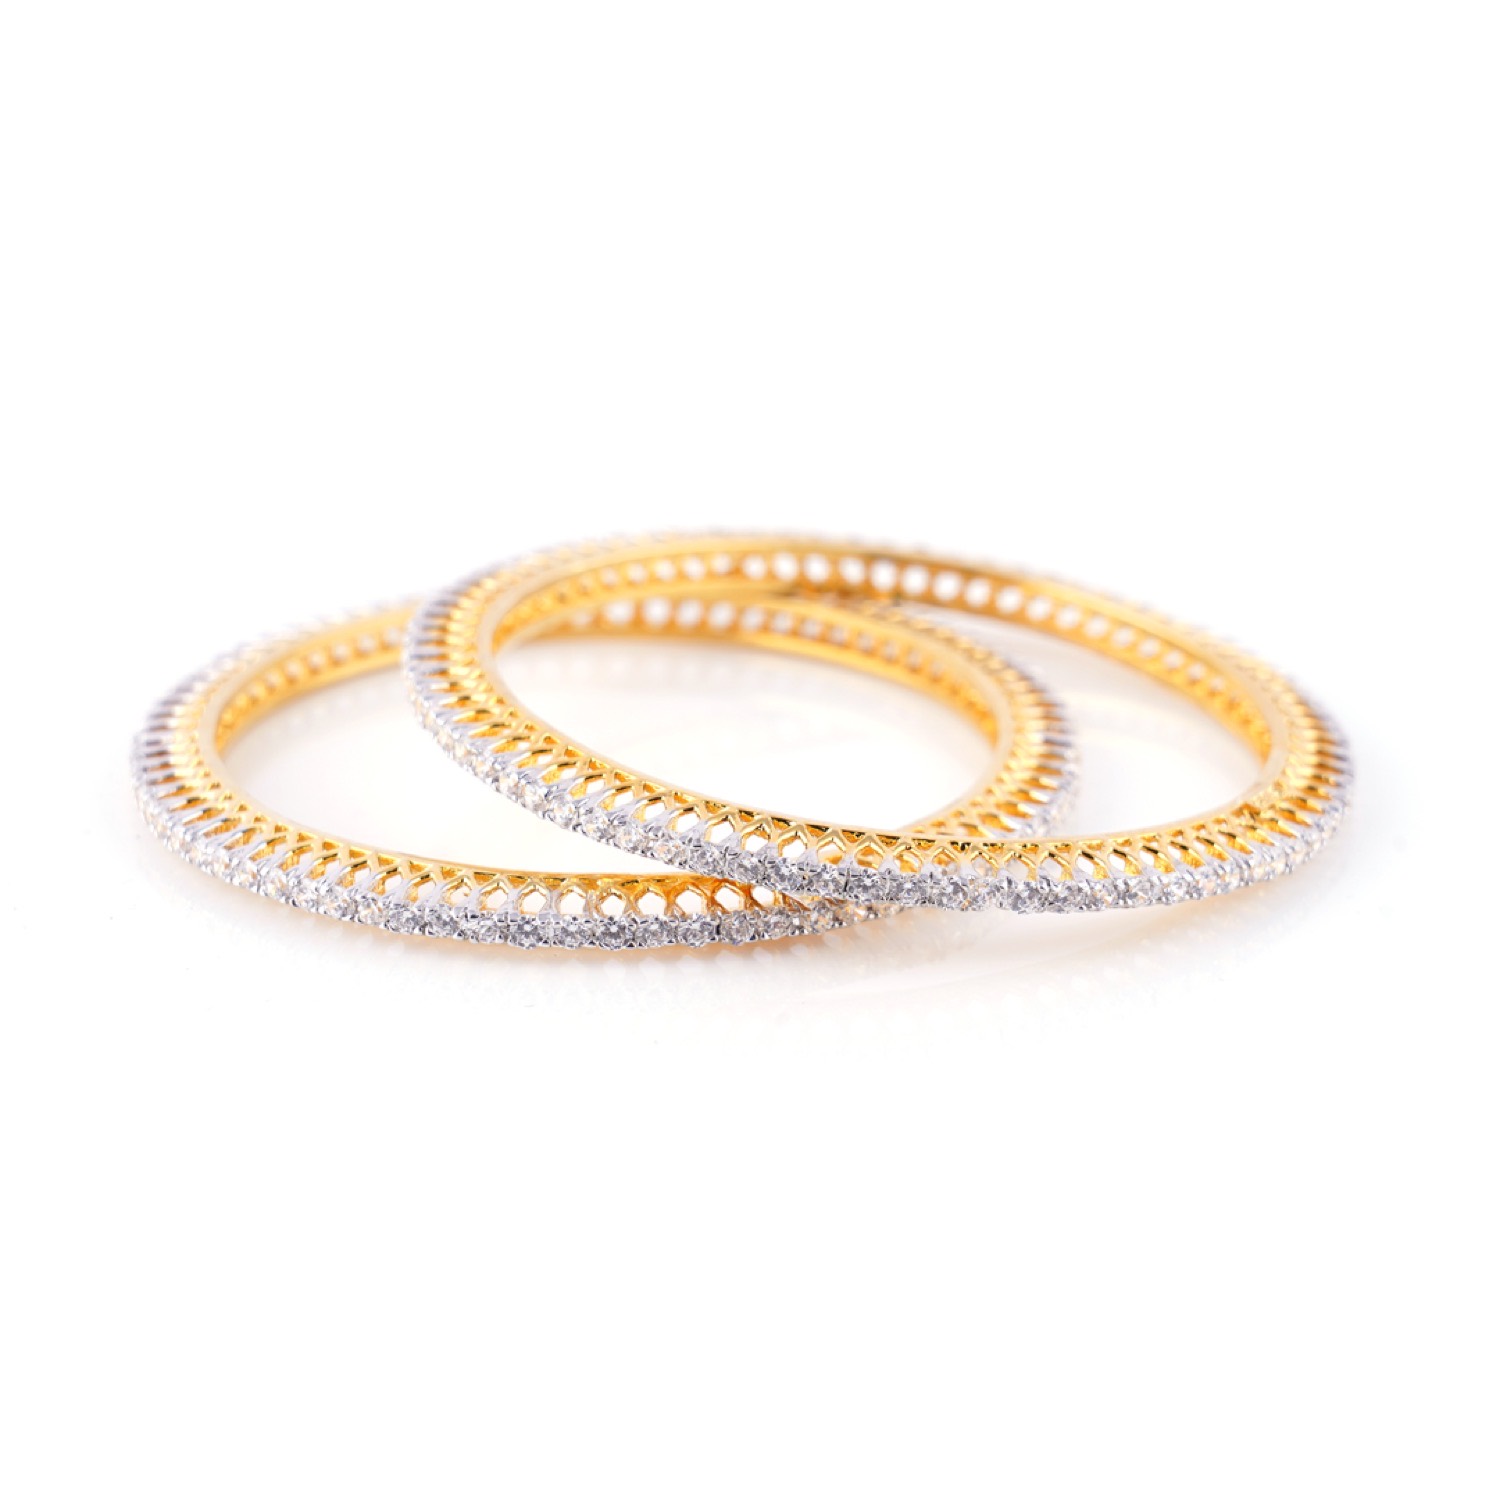 varam_bracelet_and_bangle_white_stone_crown_shaped_gold_coated_silver_bangle-1